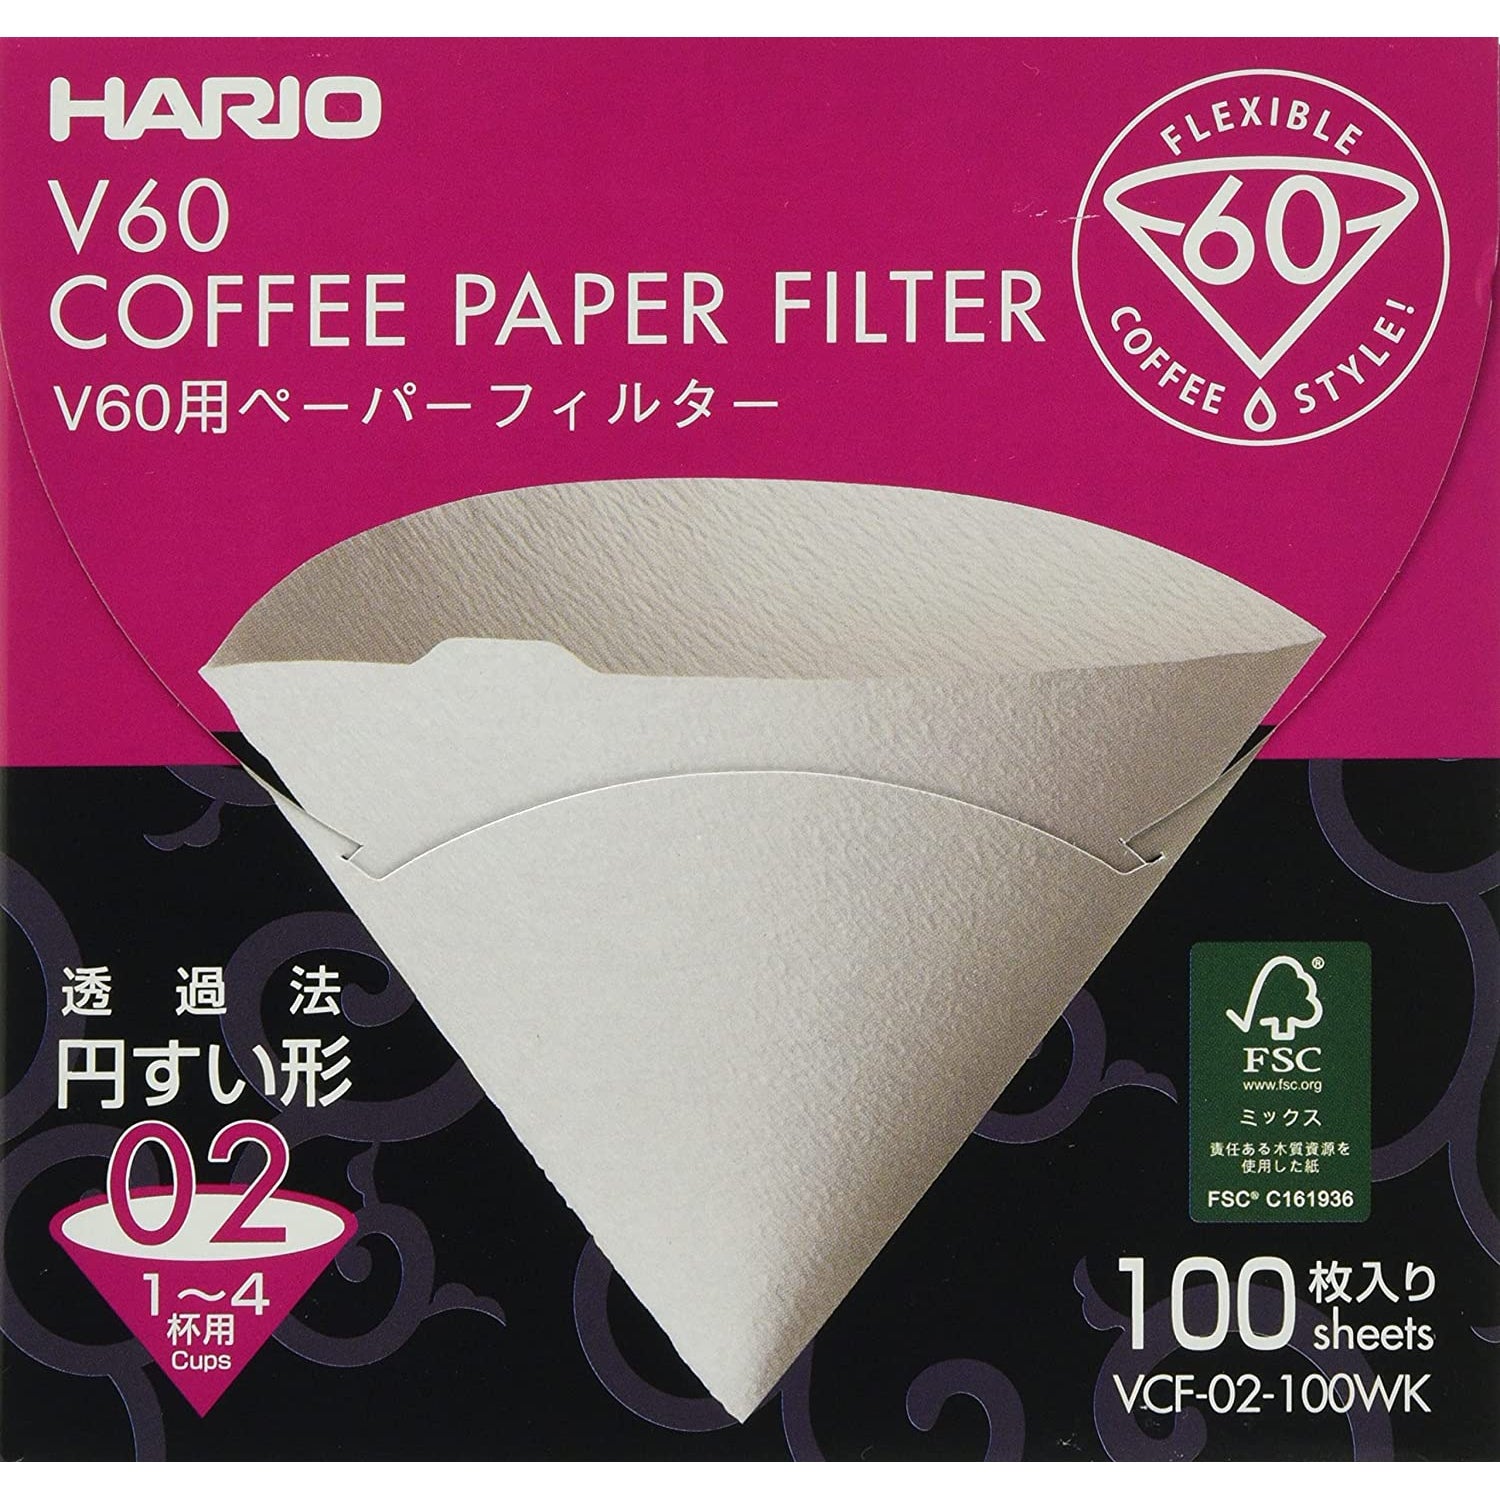 Paper filters Hario V60-02 (100 pcs.)